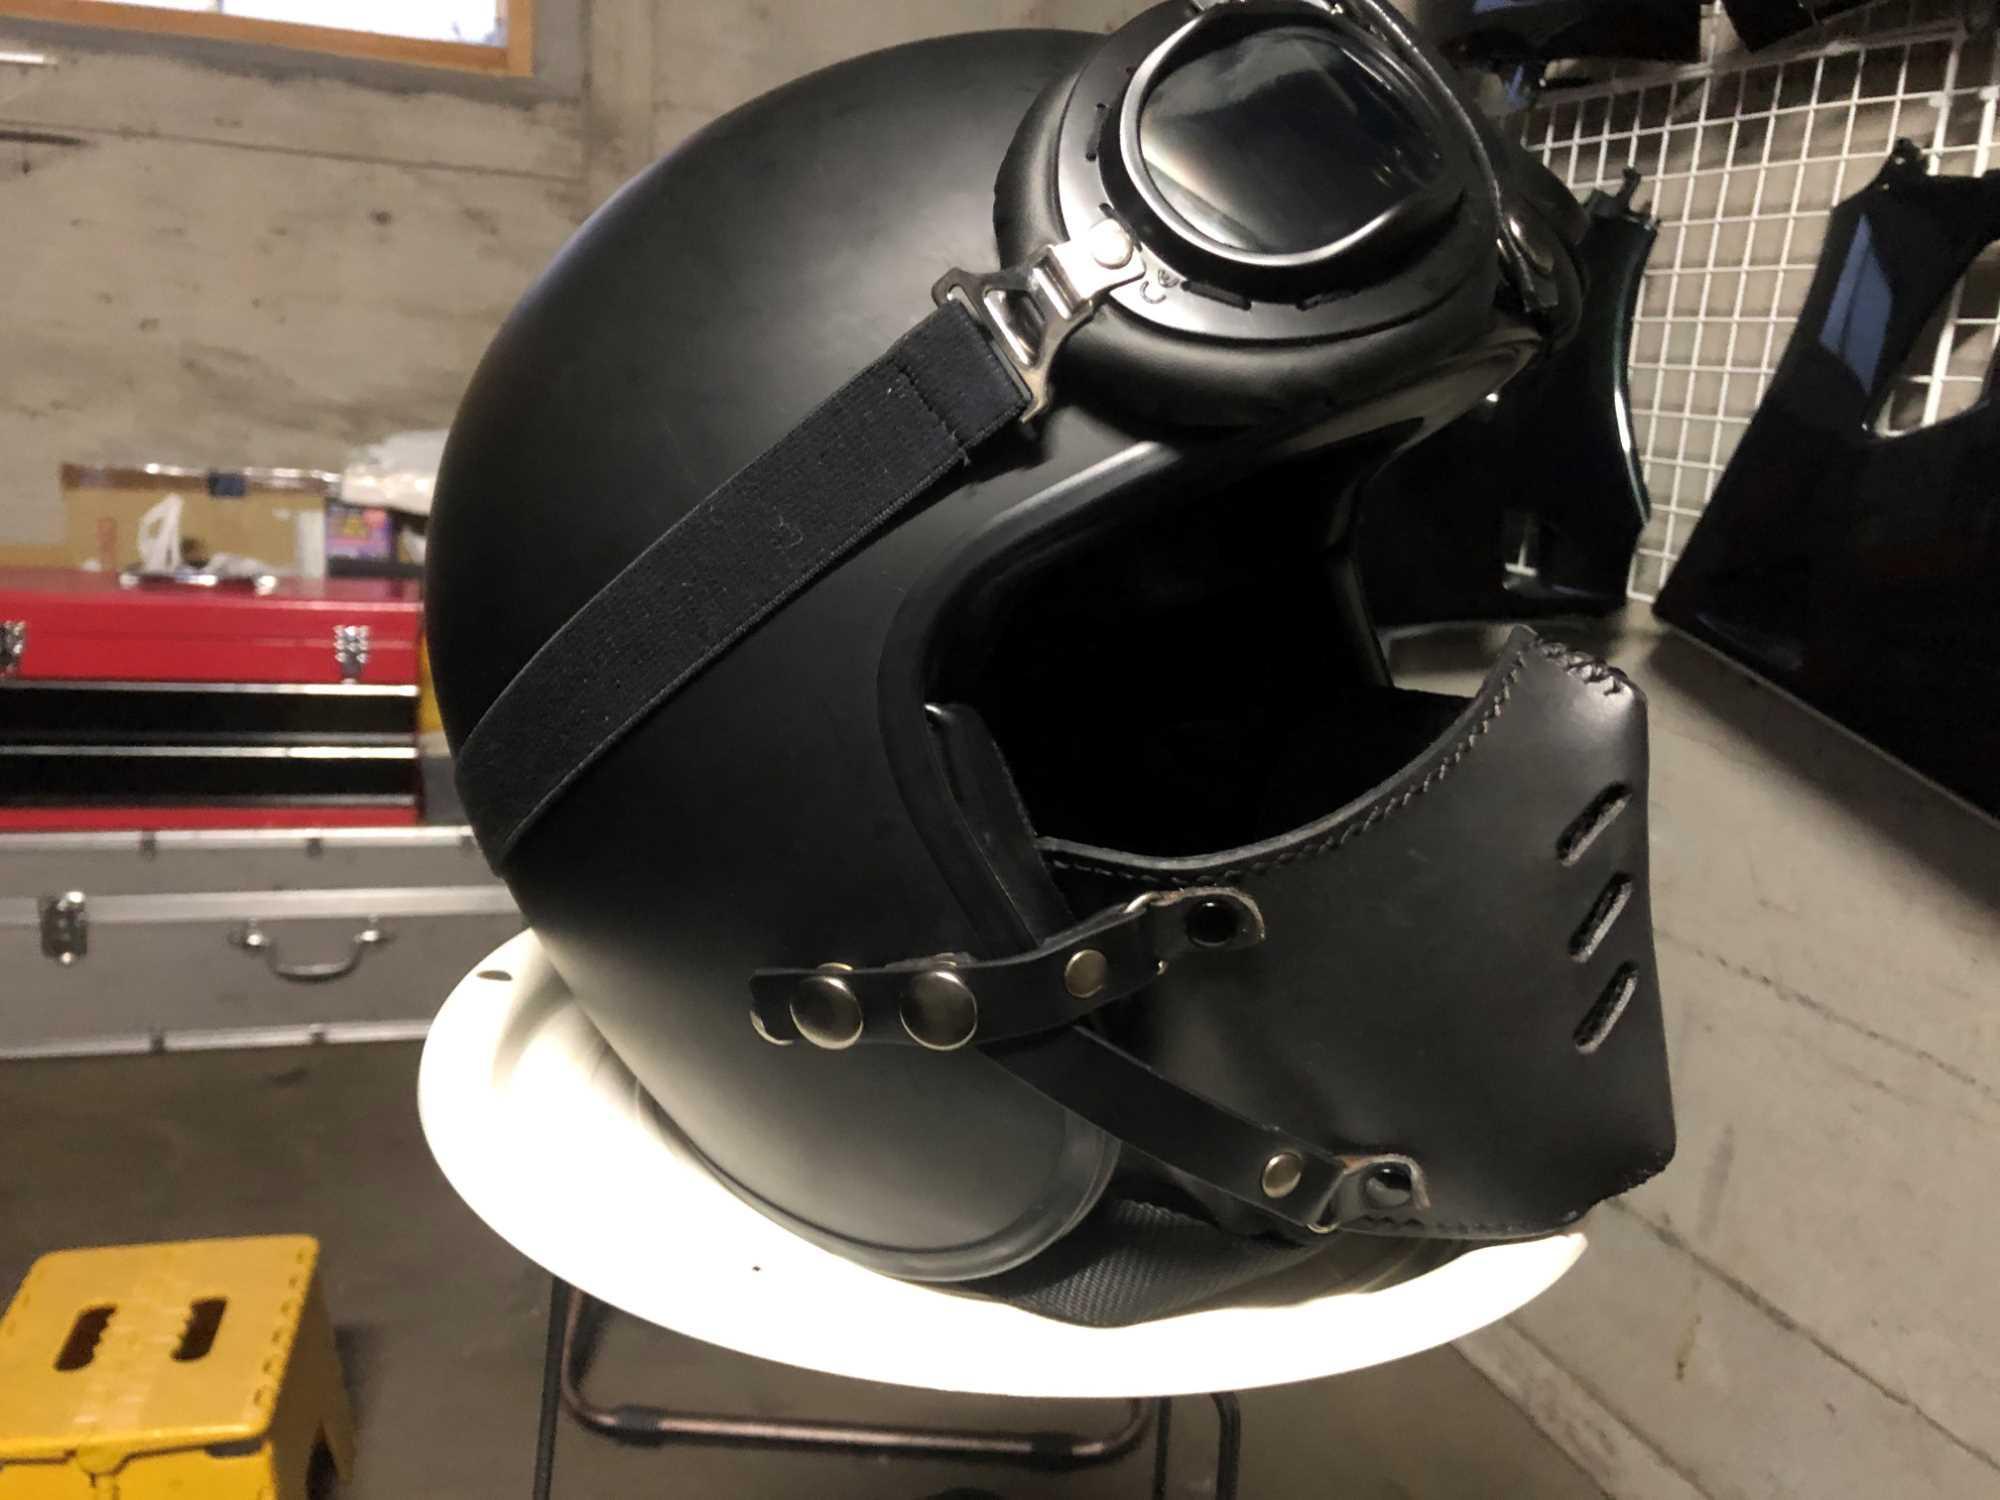 フェイス マスク バイク用 革 レザー ライダース ジェットヘルメット 愛用者に ハーレー アメリカンやカフェレーサーに似合う牛革 フェイス